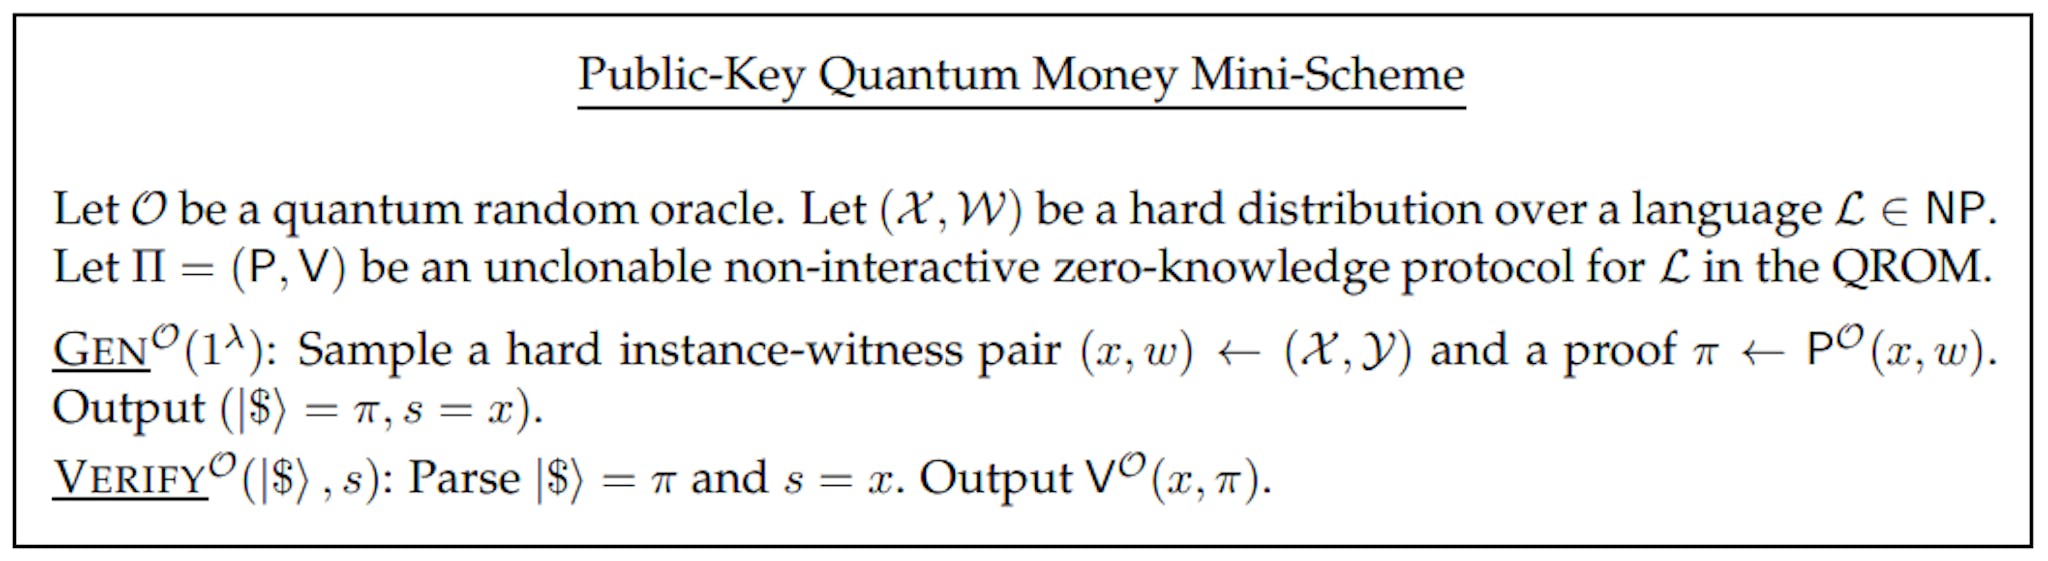 Figura 4: Miniesquema de dinero cuántico de clave pública a partir de un protocolo cuántico no interactivo no clonable